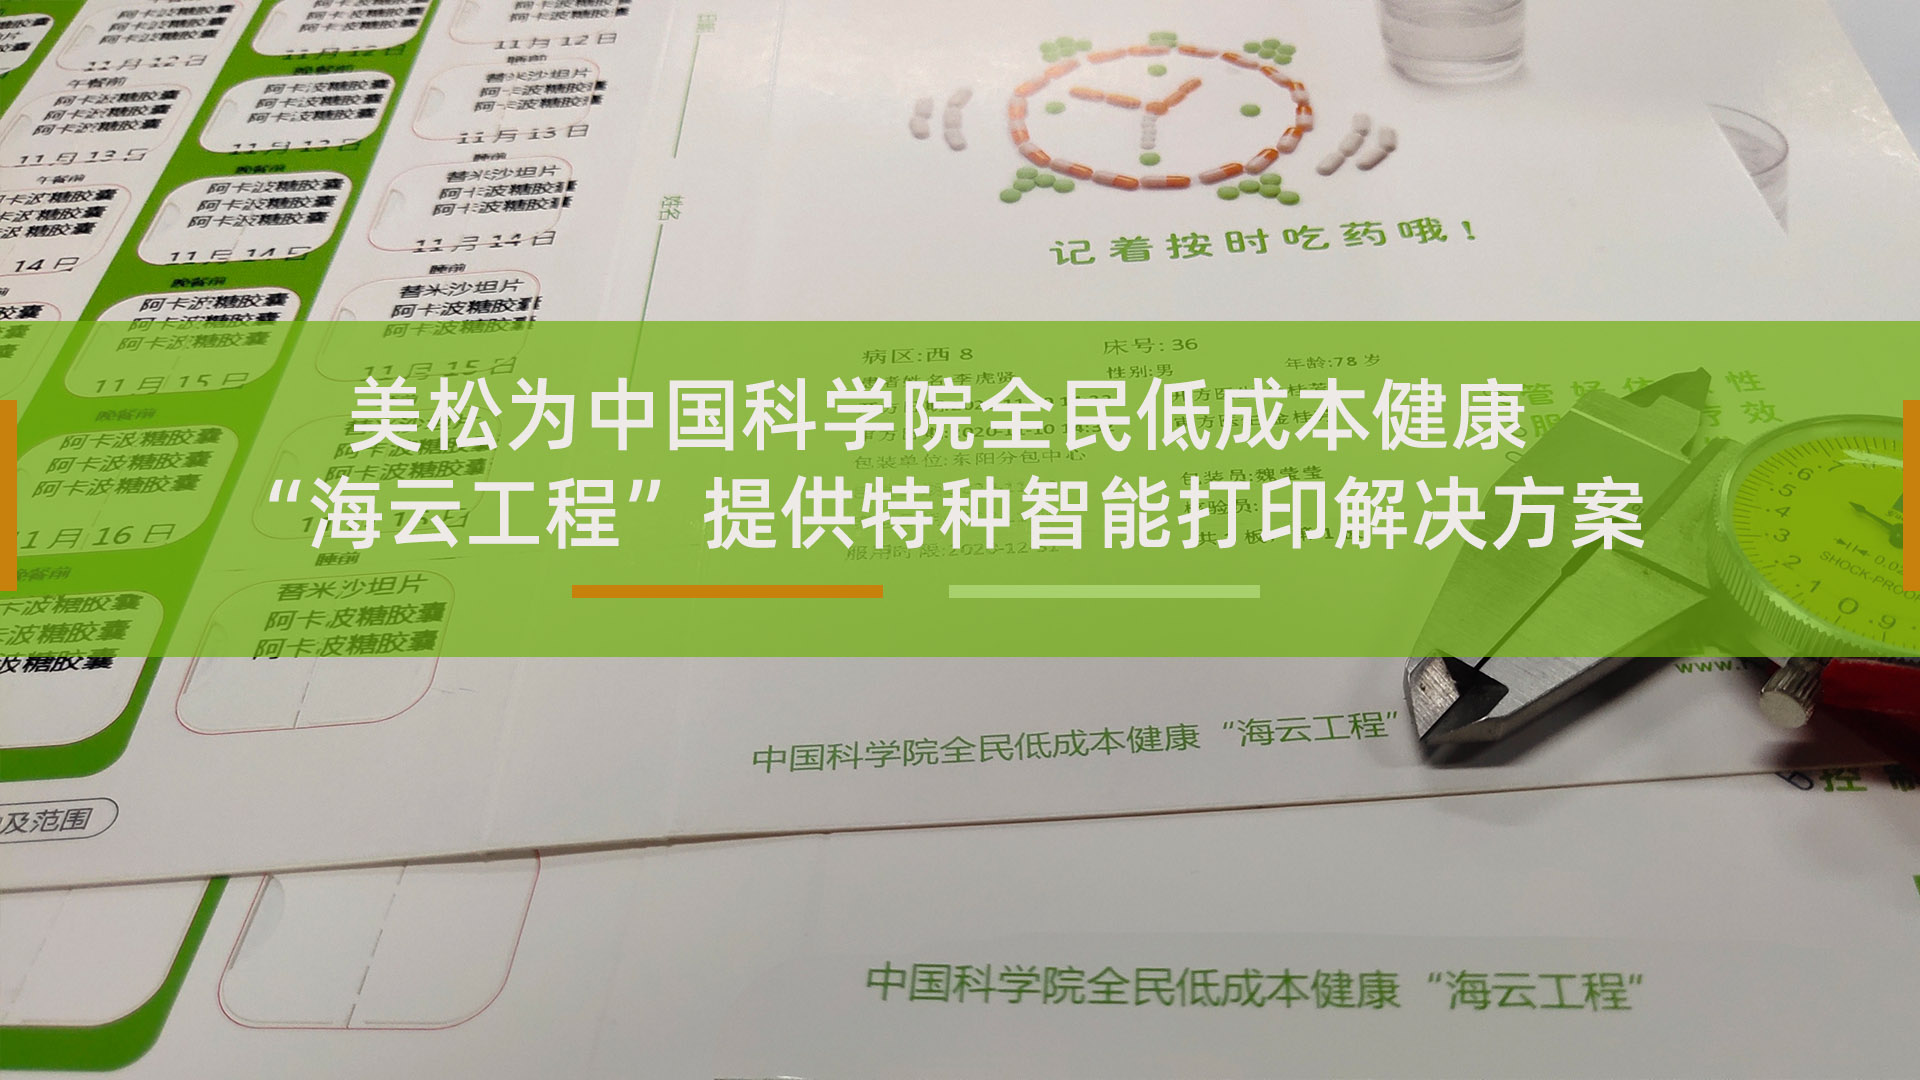 美松为中国科学院全民低成本健康提供特种智能打印解决方案